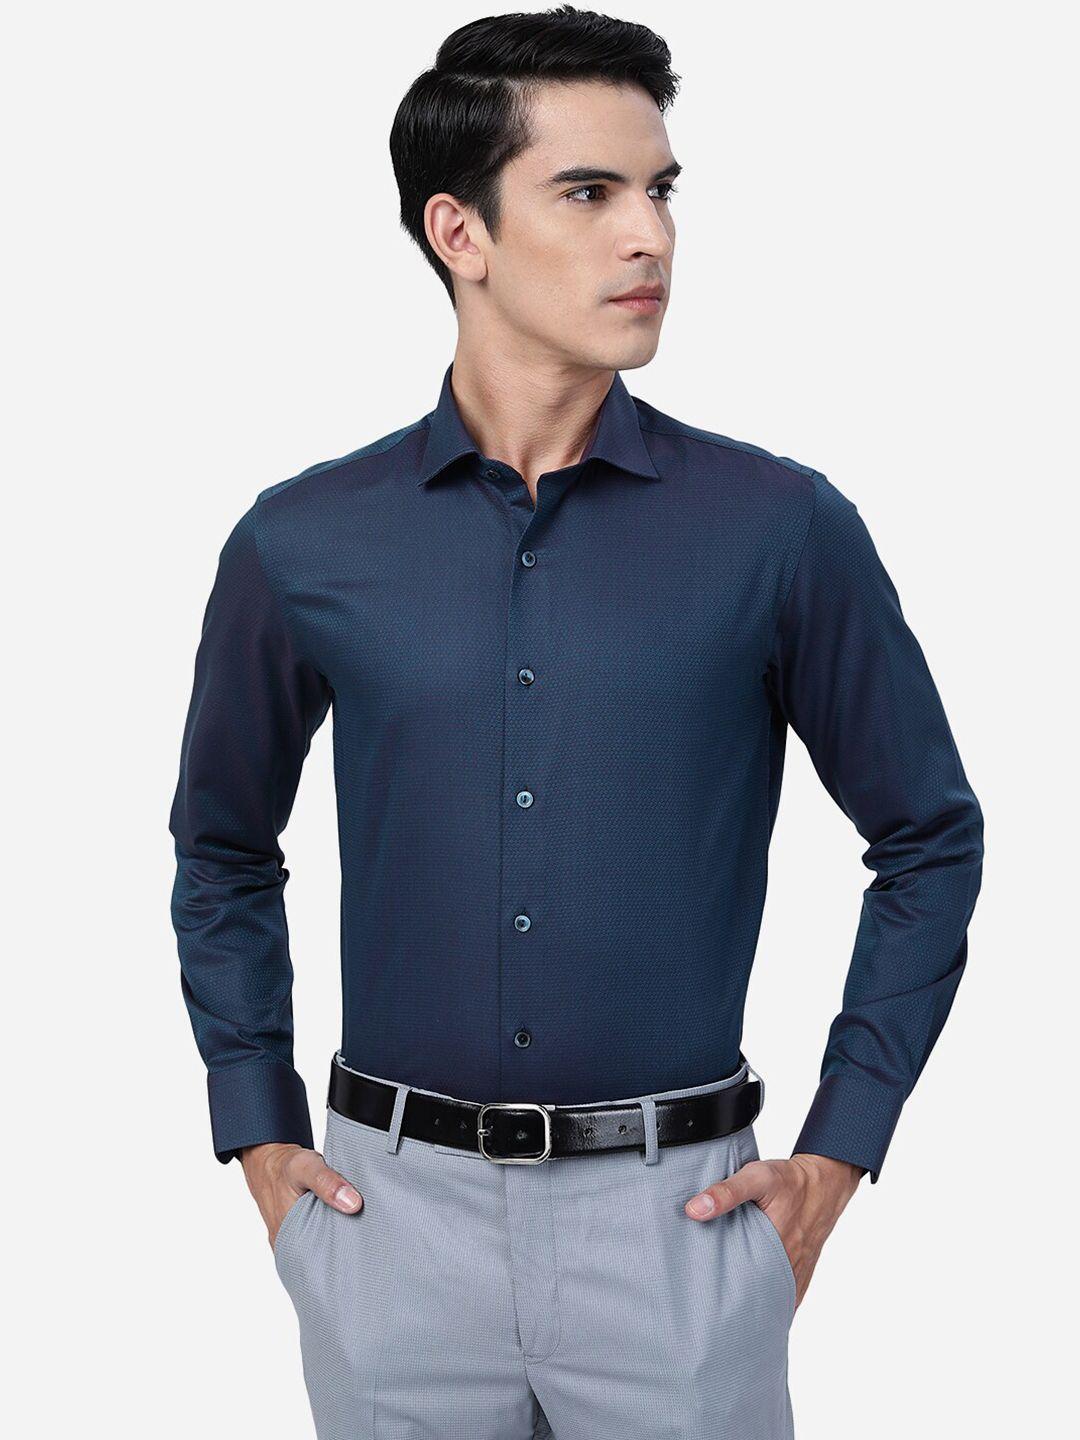 wyre-slim-fit-self-design-textured-cotton-shirt